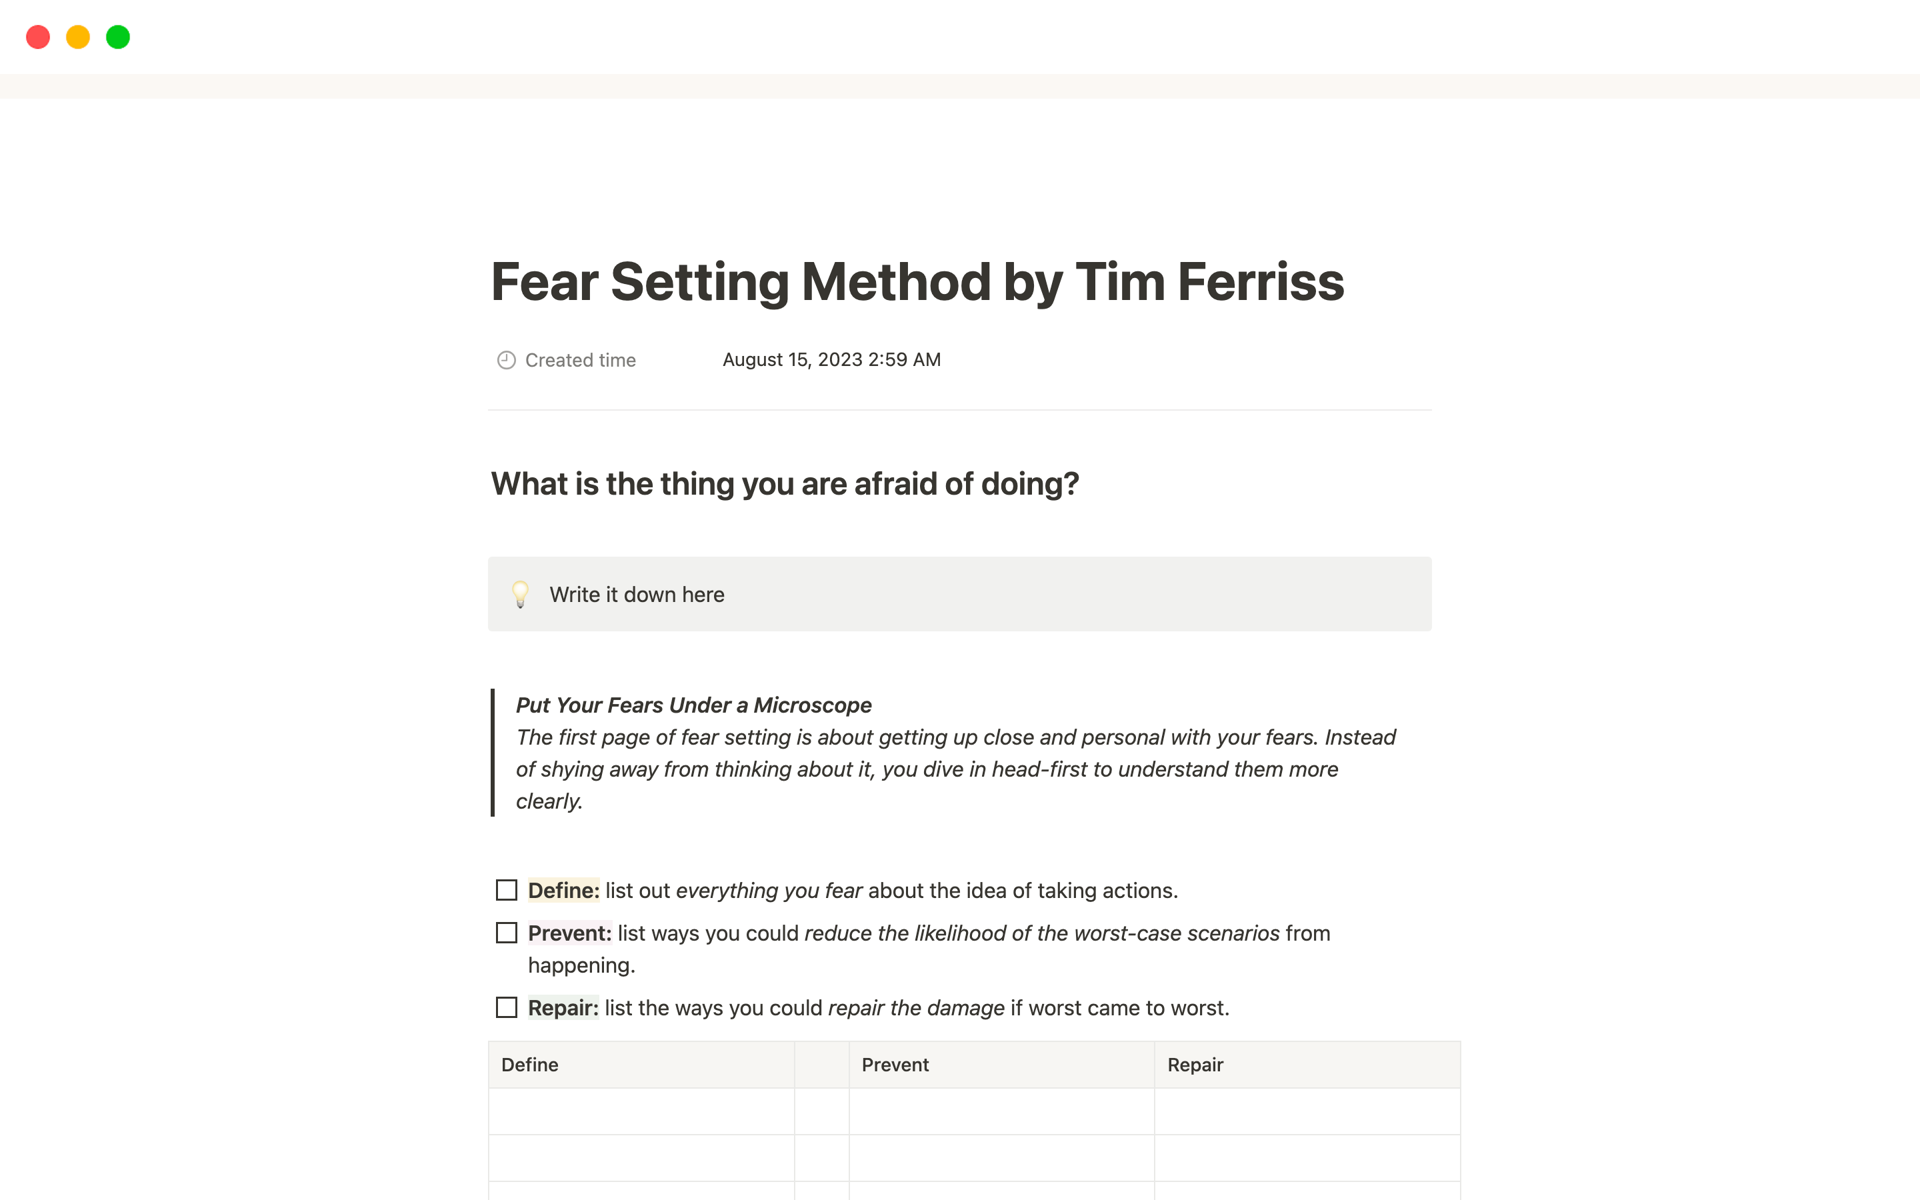 Uma prévia do modelo para Fear Setting Method by Tim Ferriss